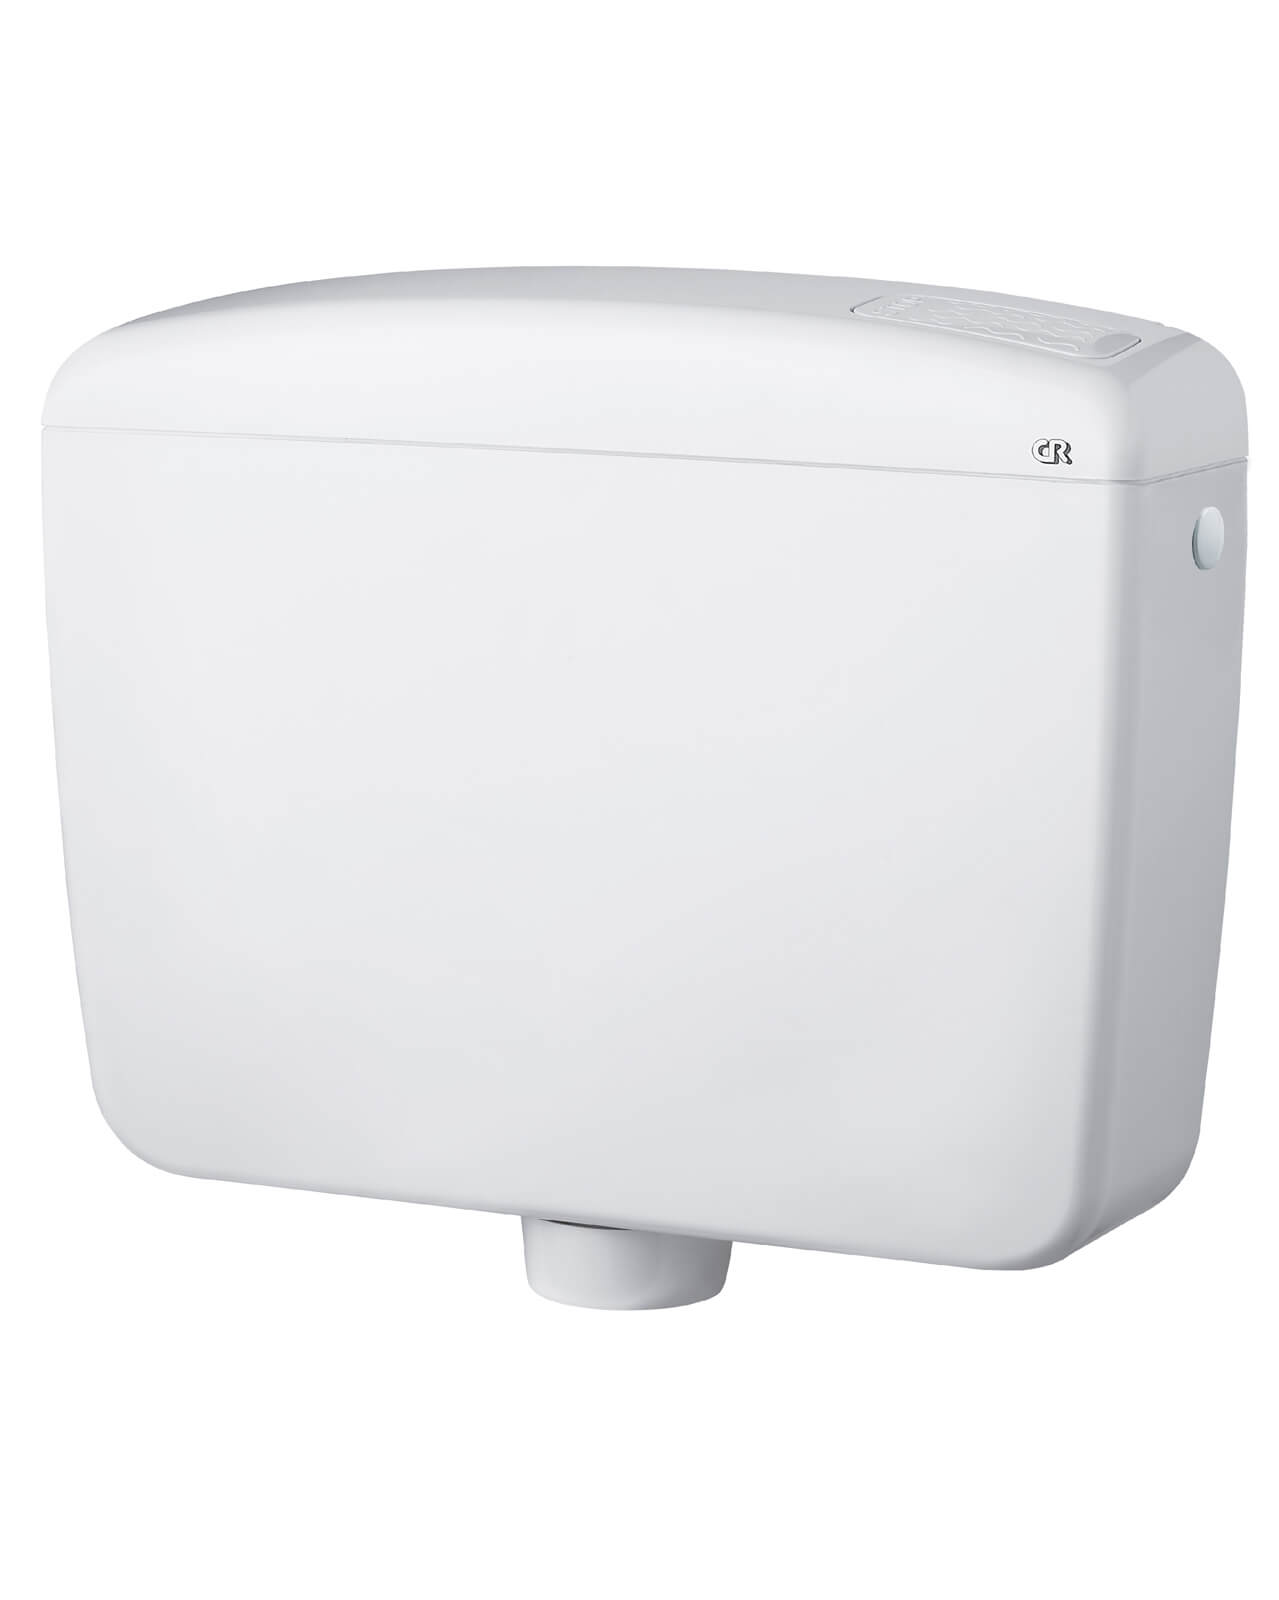 Rezervor WC BETA Eurociere 1030, ultraplat, instalare pe perete, 44 x 34.5 x 12.5 cm, Alb